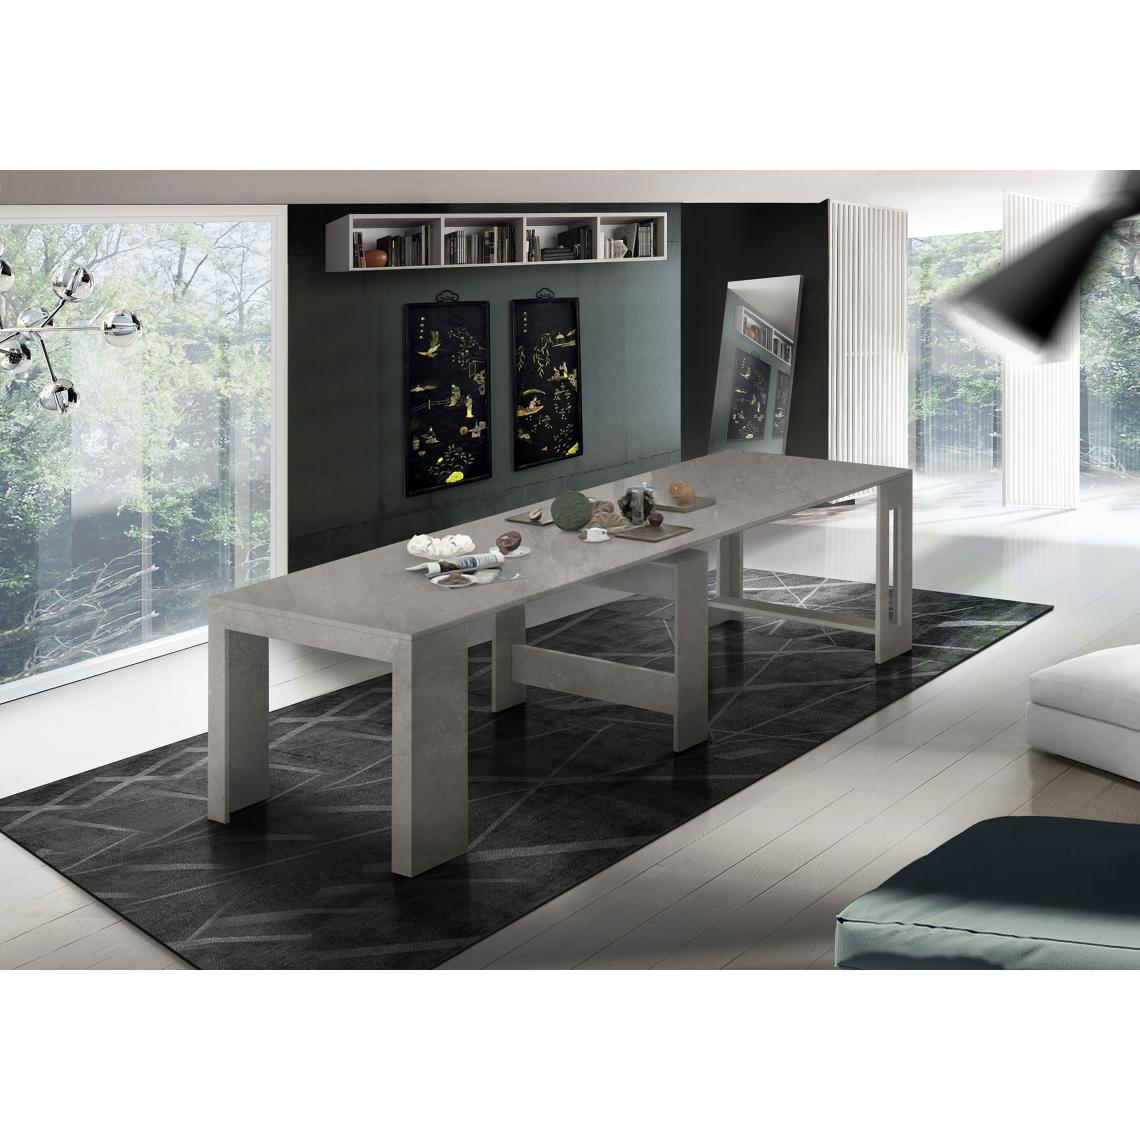 Alter - Table à manger moderne, Made in Italy, Console extensible jusqu'à 12 places, avec support d'extension, 51x90h77 cm (jusqu'à 300 cm) couleur Gris Cendre - Tables à manger